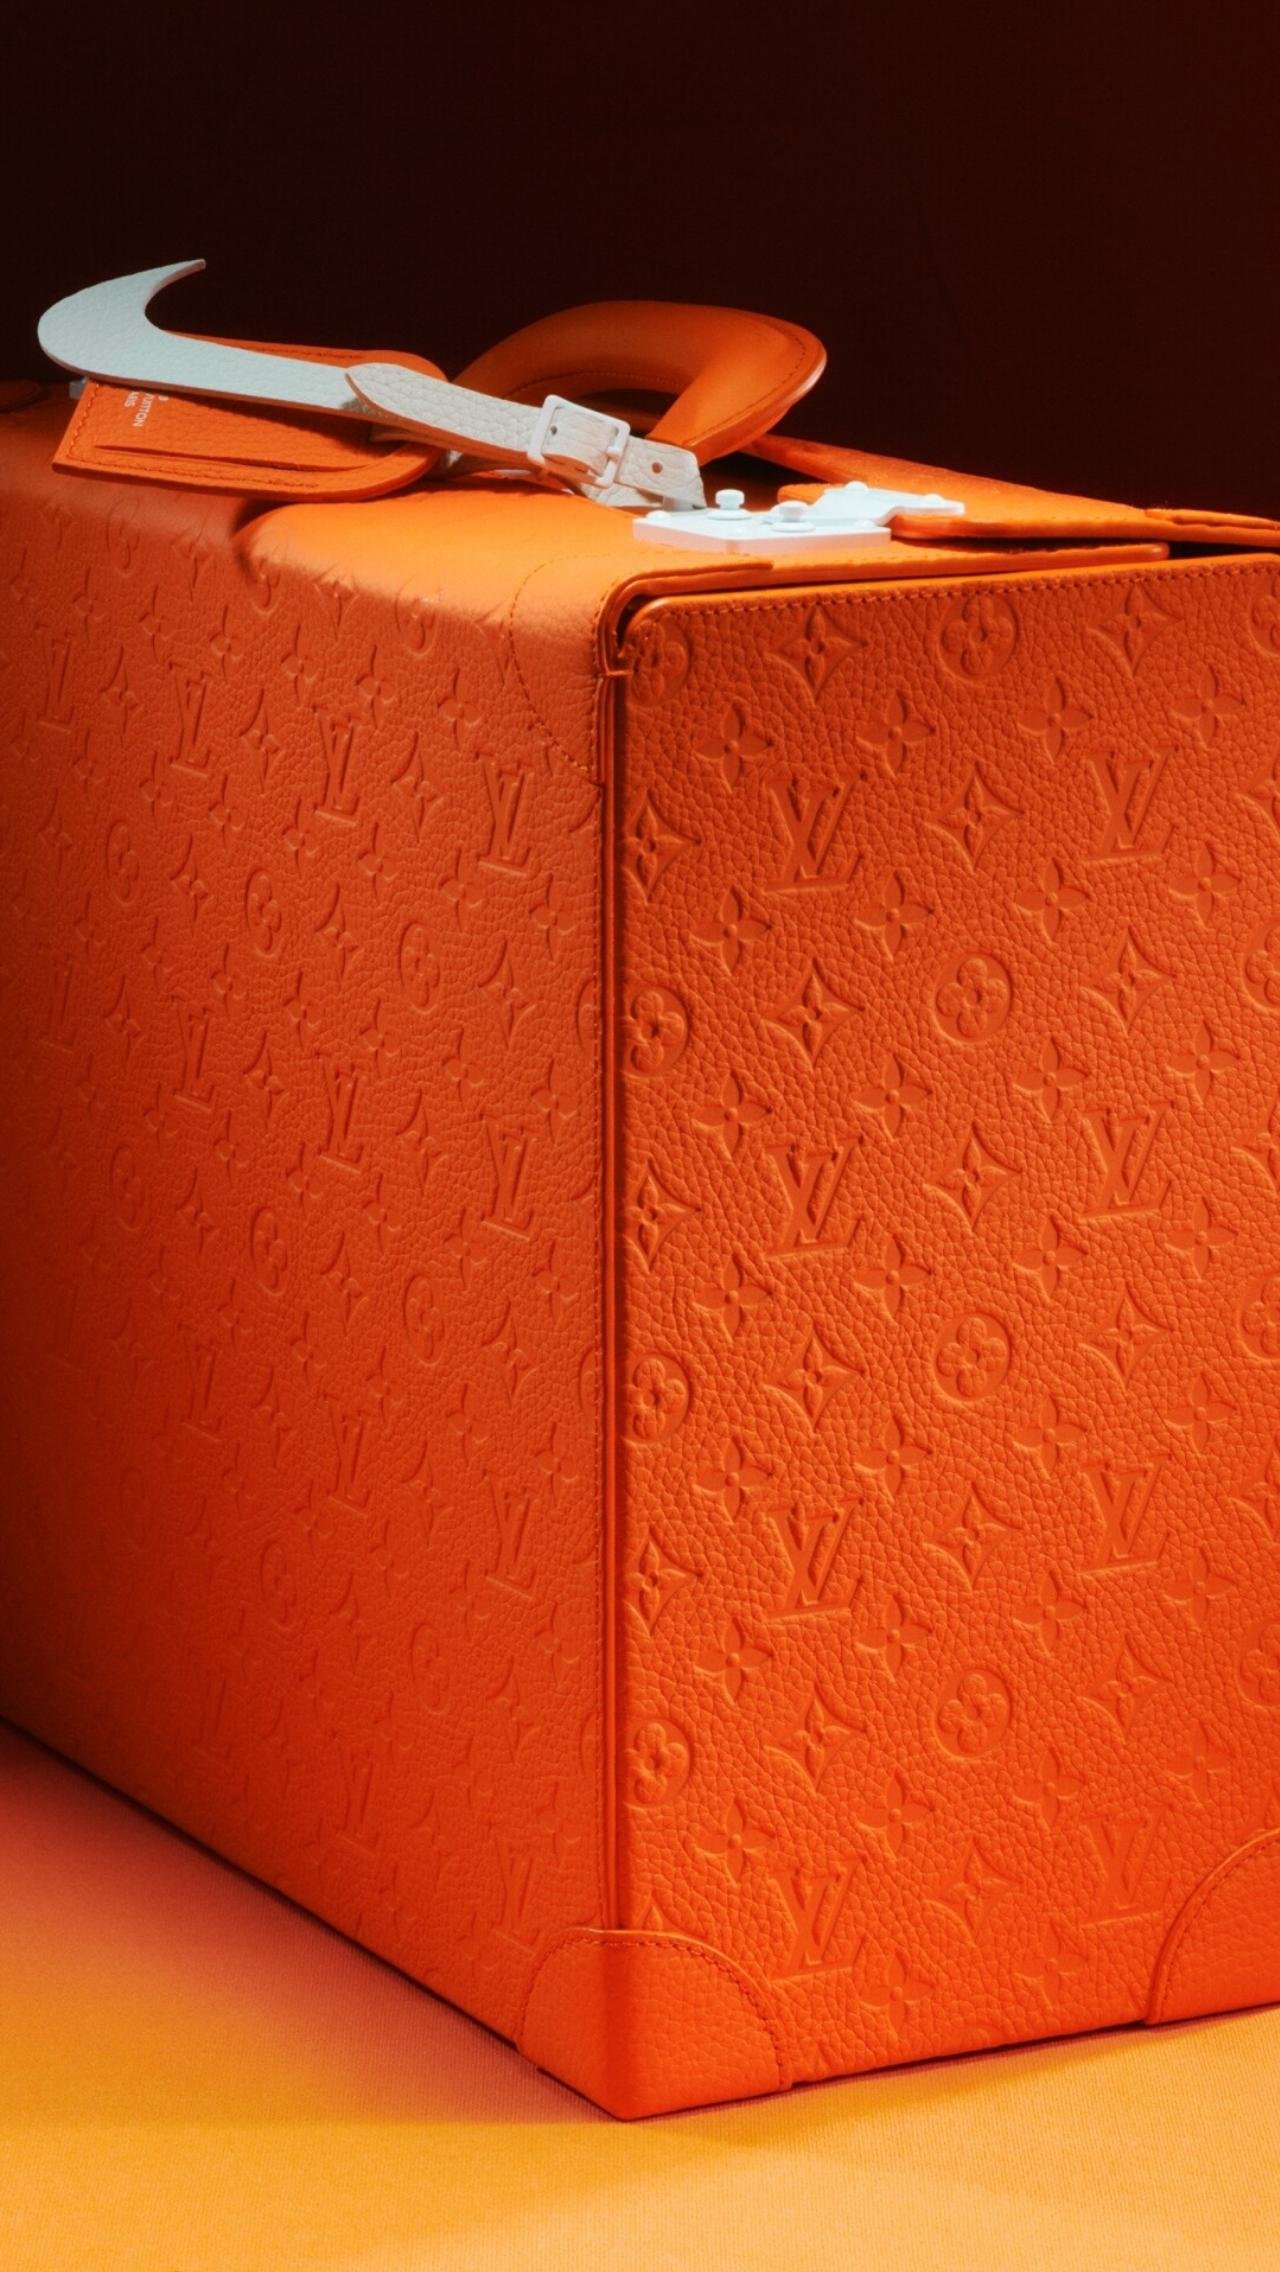 Каждая пара будет продаваться со специальным футляром Louis Vuitton из оранжевой кожи с тиснением LV, биркой и белым «свушем».